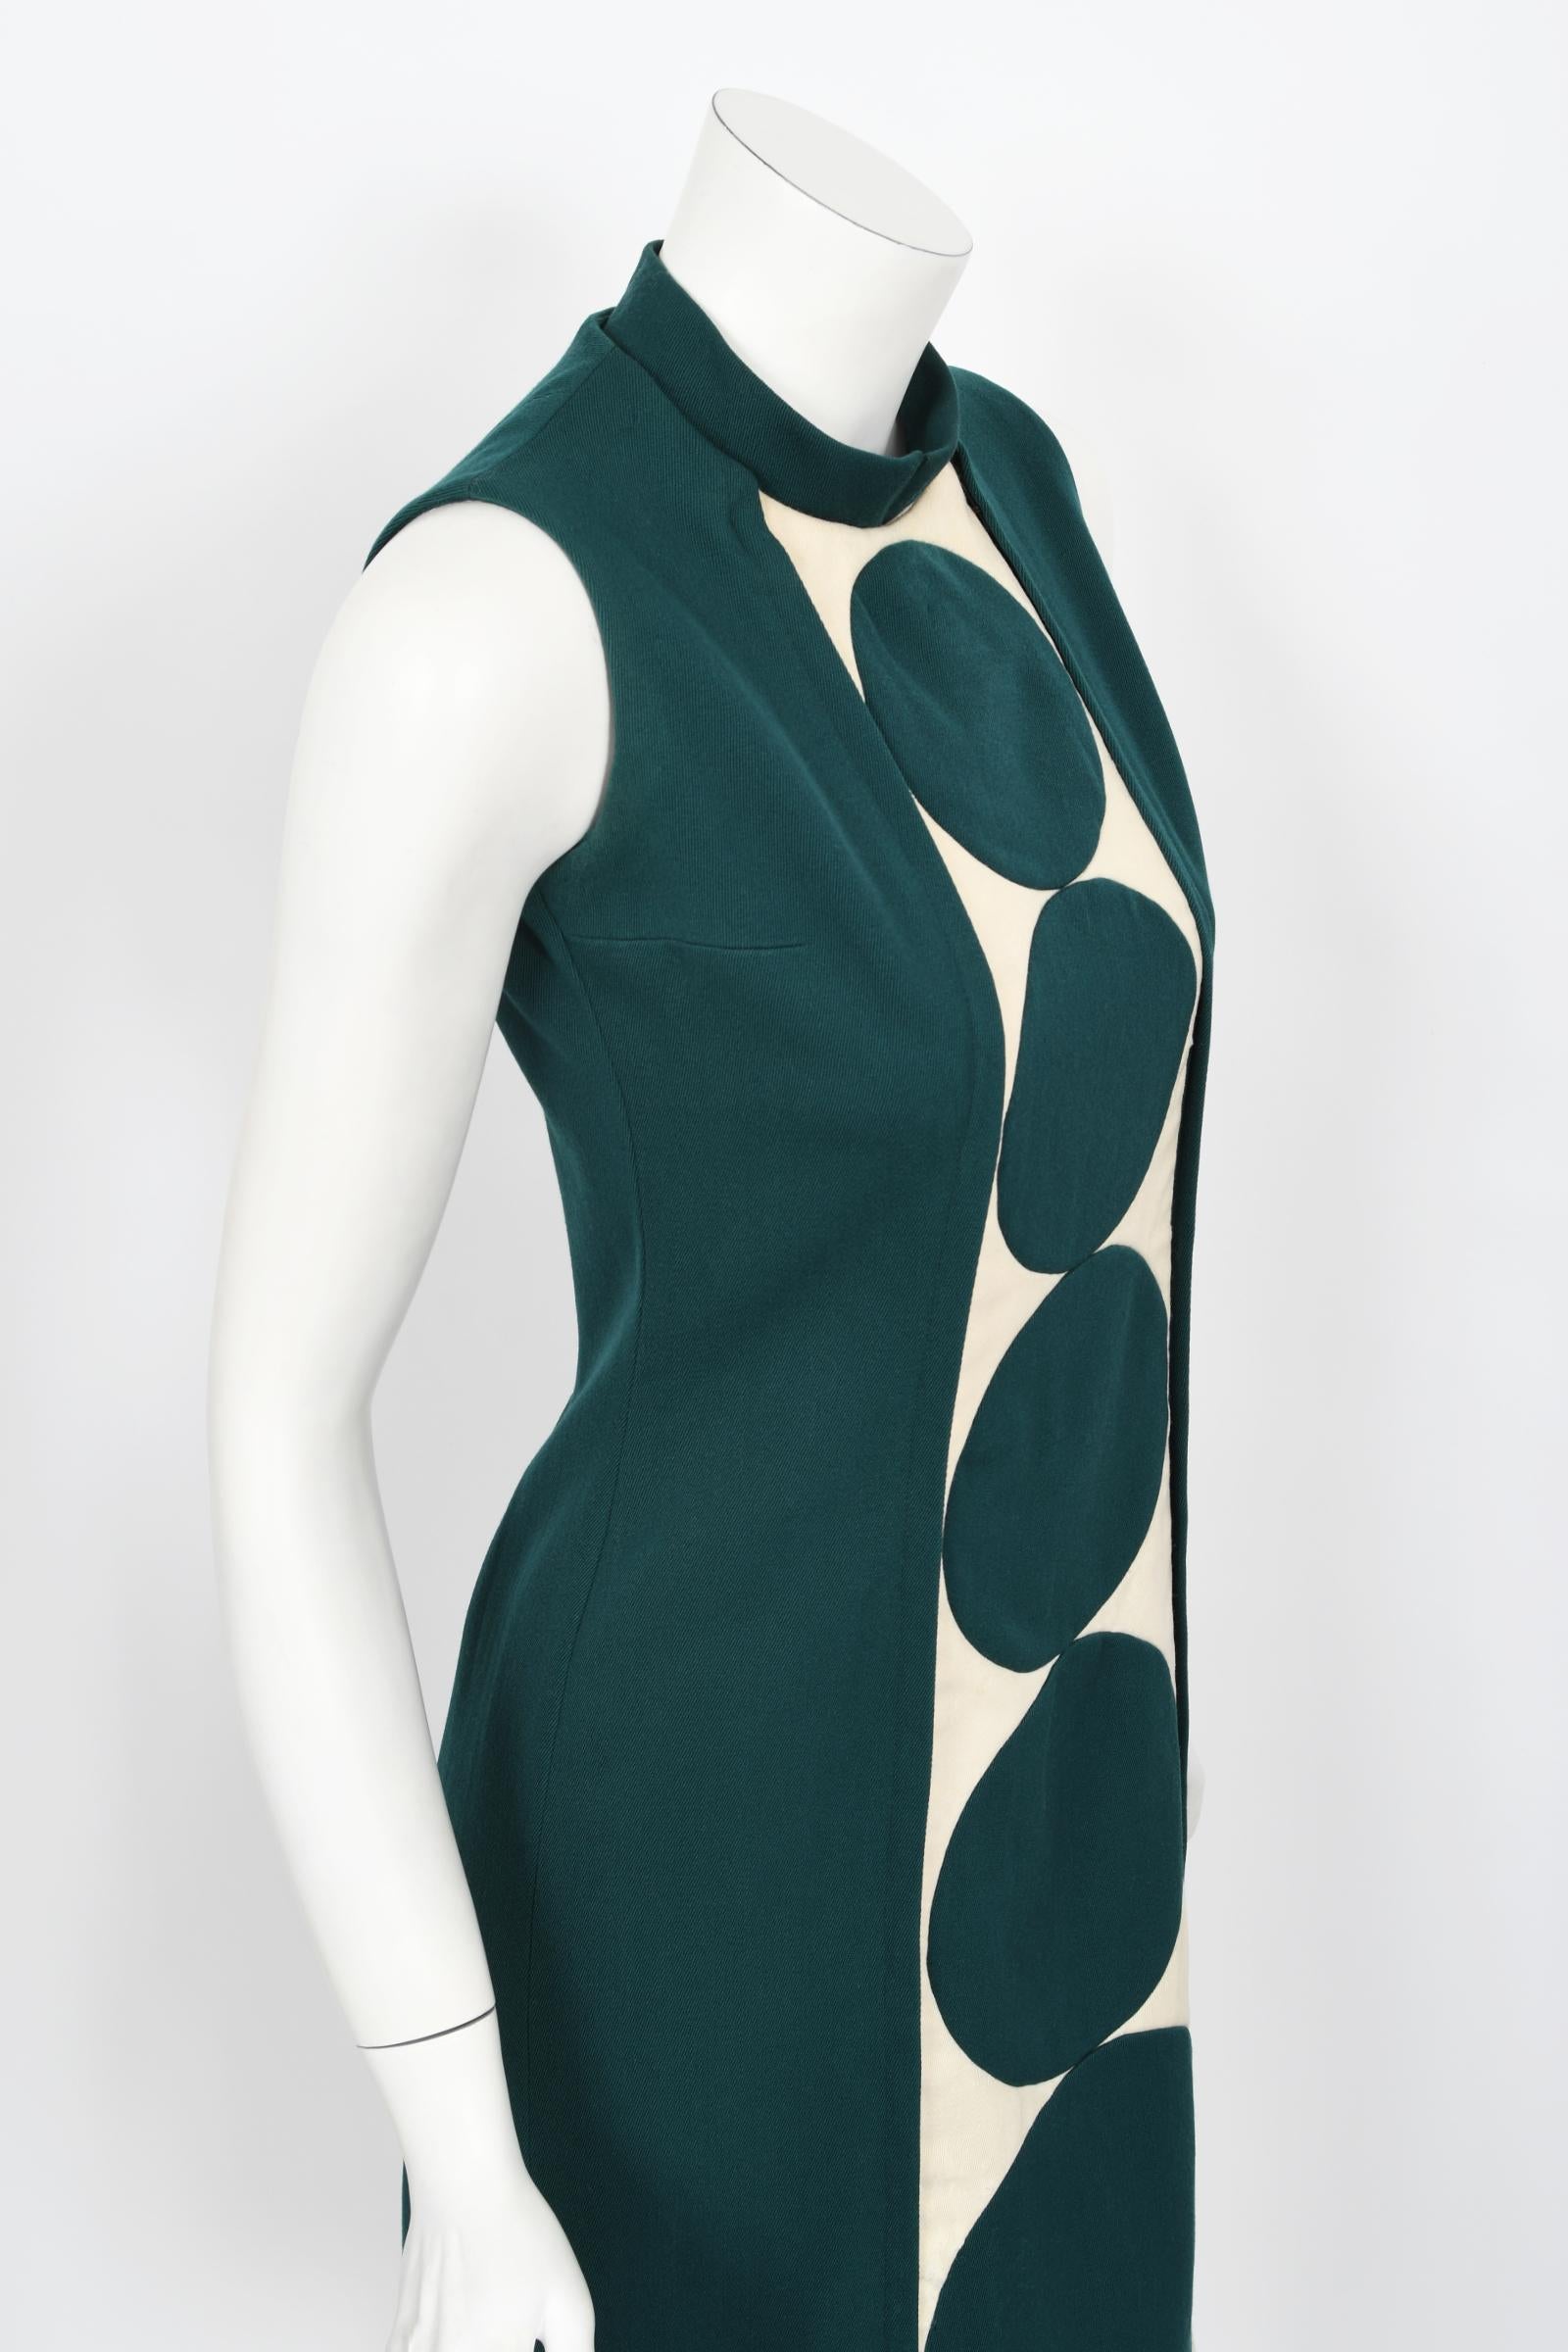 Vintage 1966 Jacques Esterel Haute Couture Documented Teal Blue Op-Art Mod Dress For Sale 5